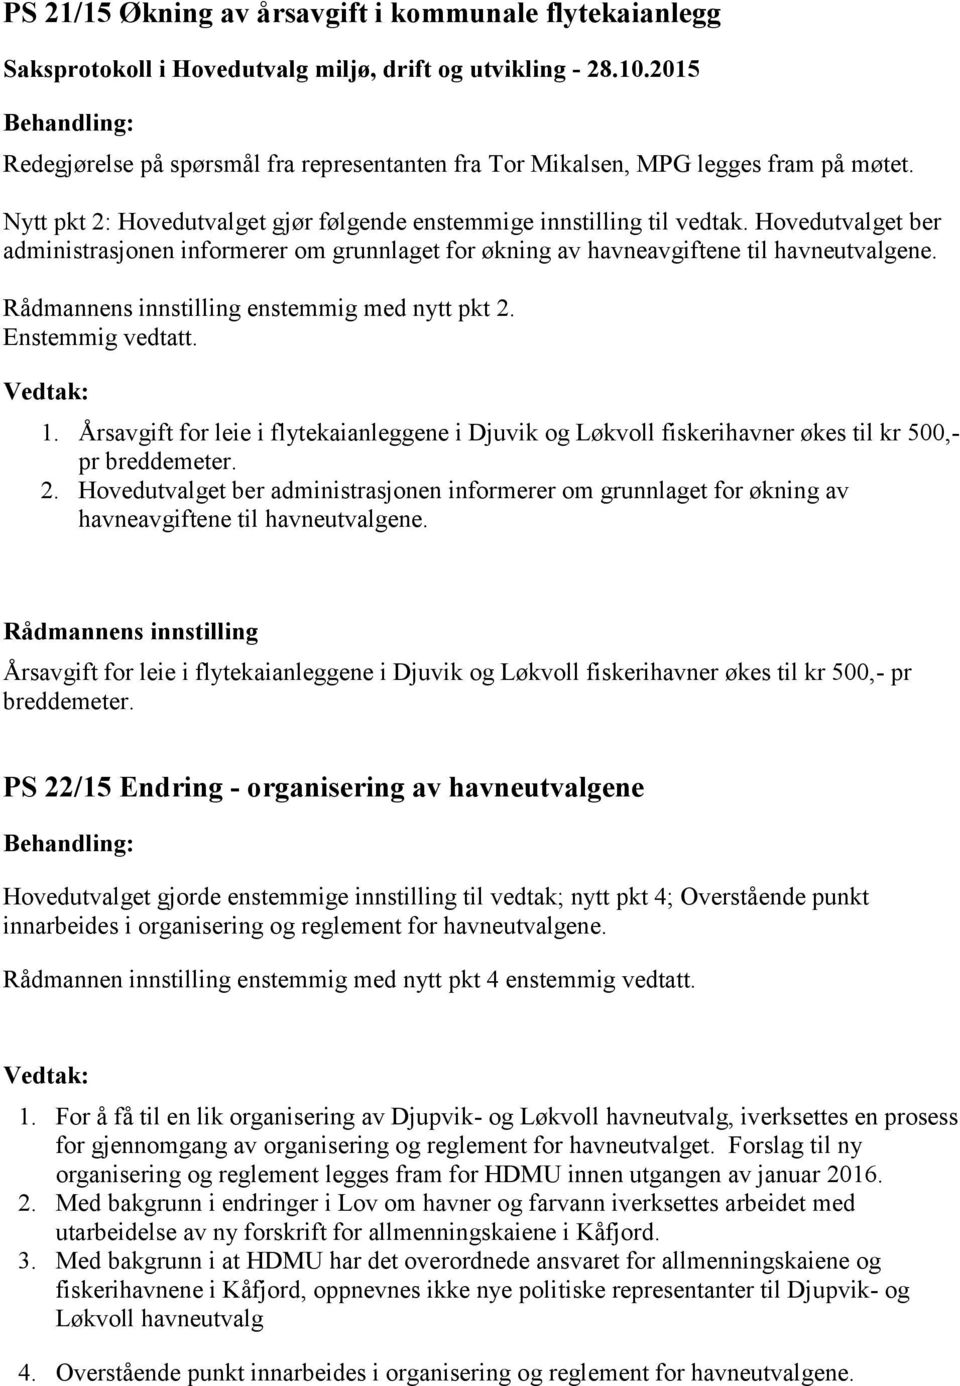 enstemmig med nytt pkt 2. Enstemmig vedtatt. 1. Årsavgift for leie i flytekaianleggene i Djuvik og Løkvoll fiskerihavner økes til kr 500,- pr breddemeter. 2. Hovedutvalget ber administrasjonen informerer om grunnlaget for økning av havneavgiftene til havneutvalgene.